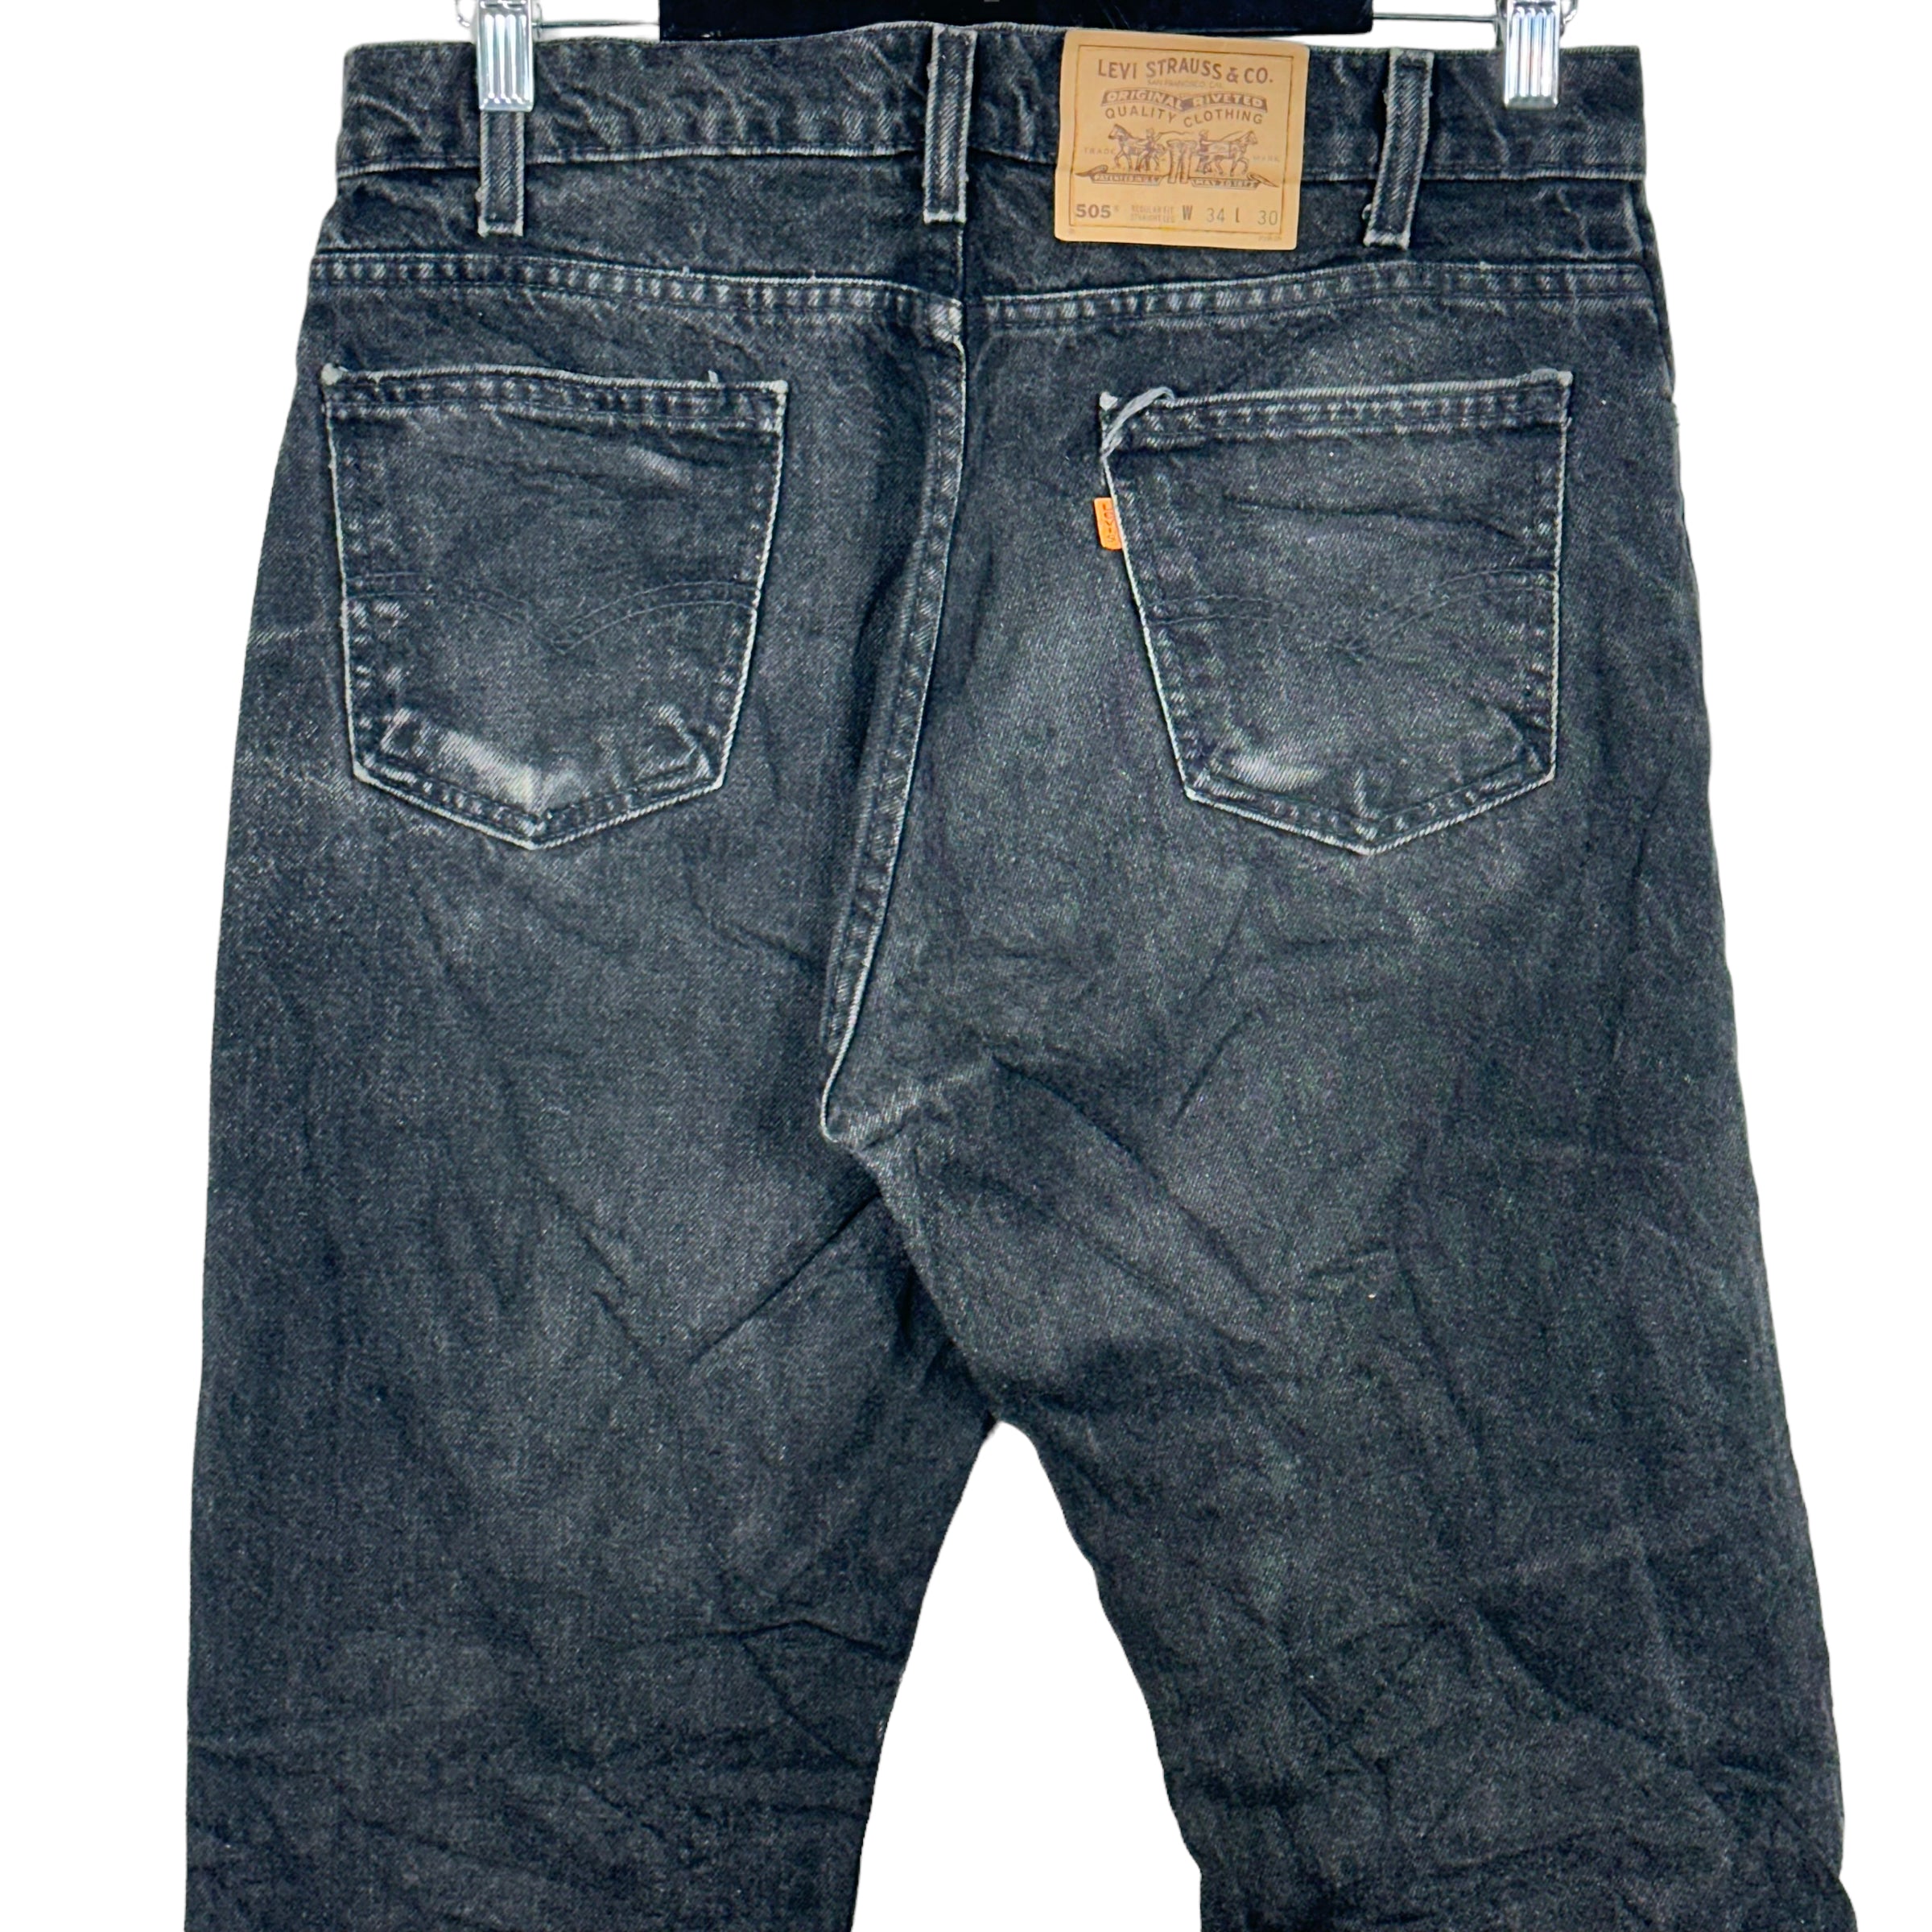 Vintage Levis 505 Jeans